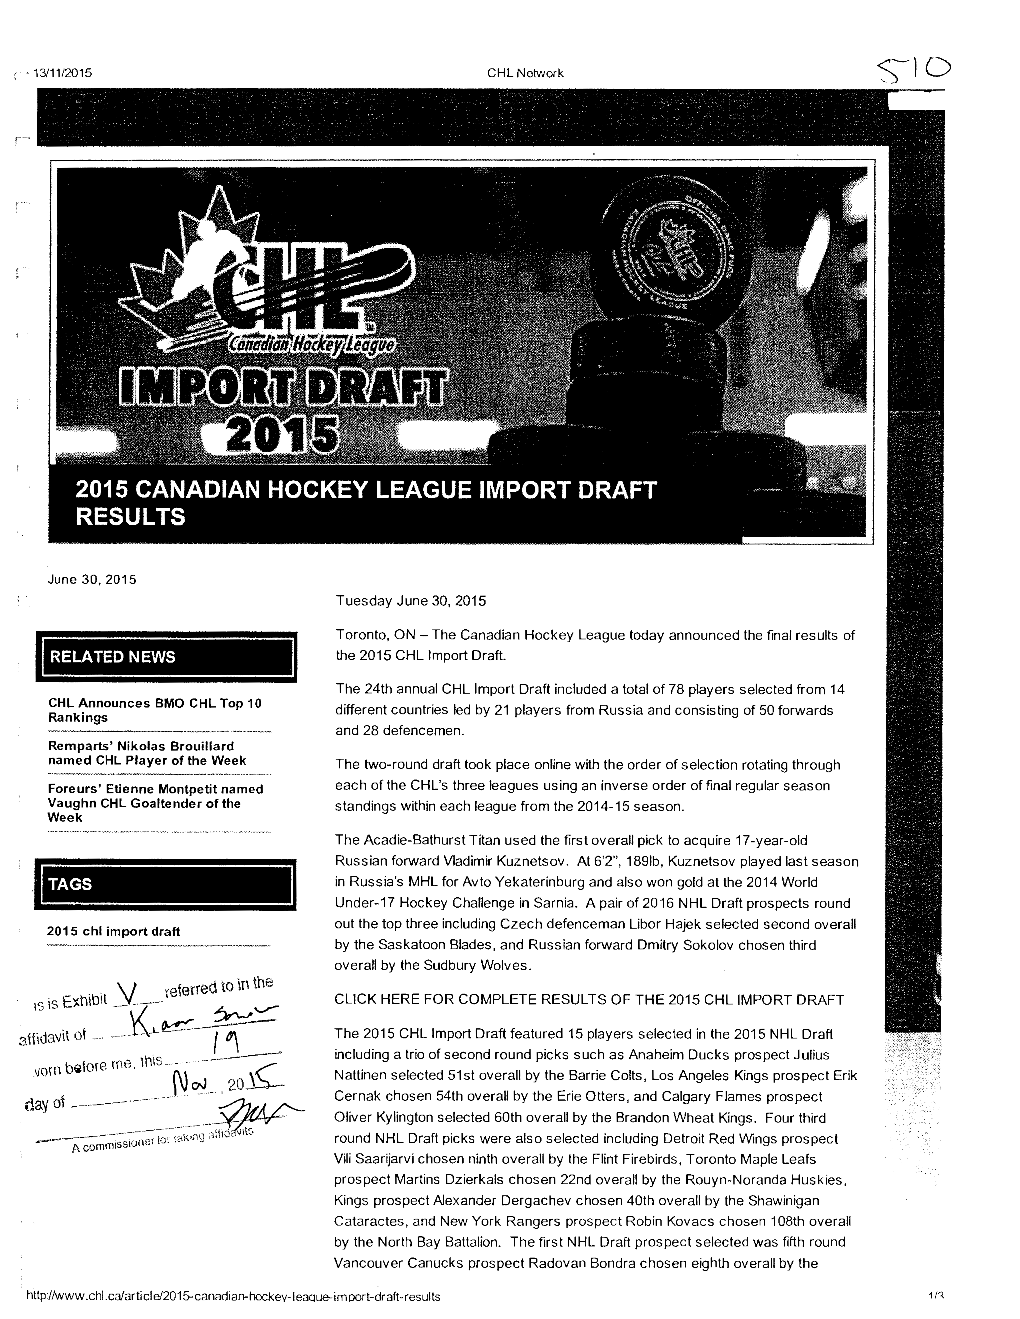 2015 Canadian Hockey League Import Draft